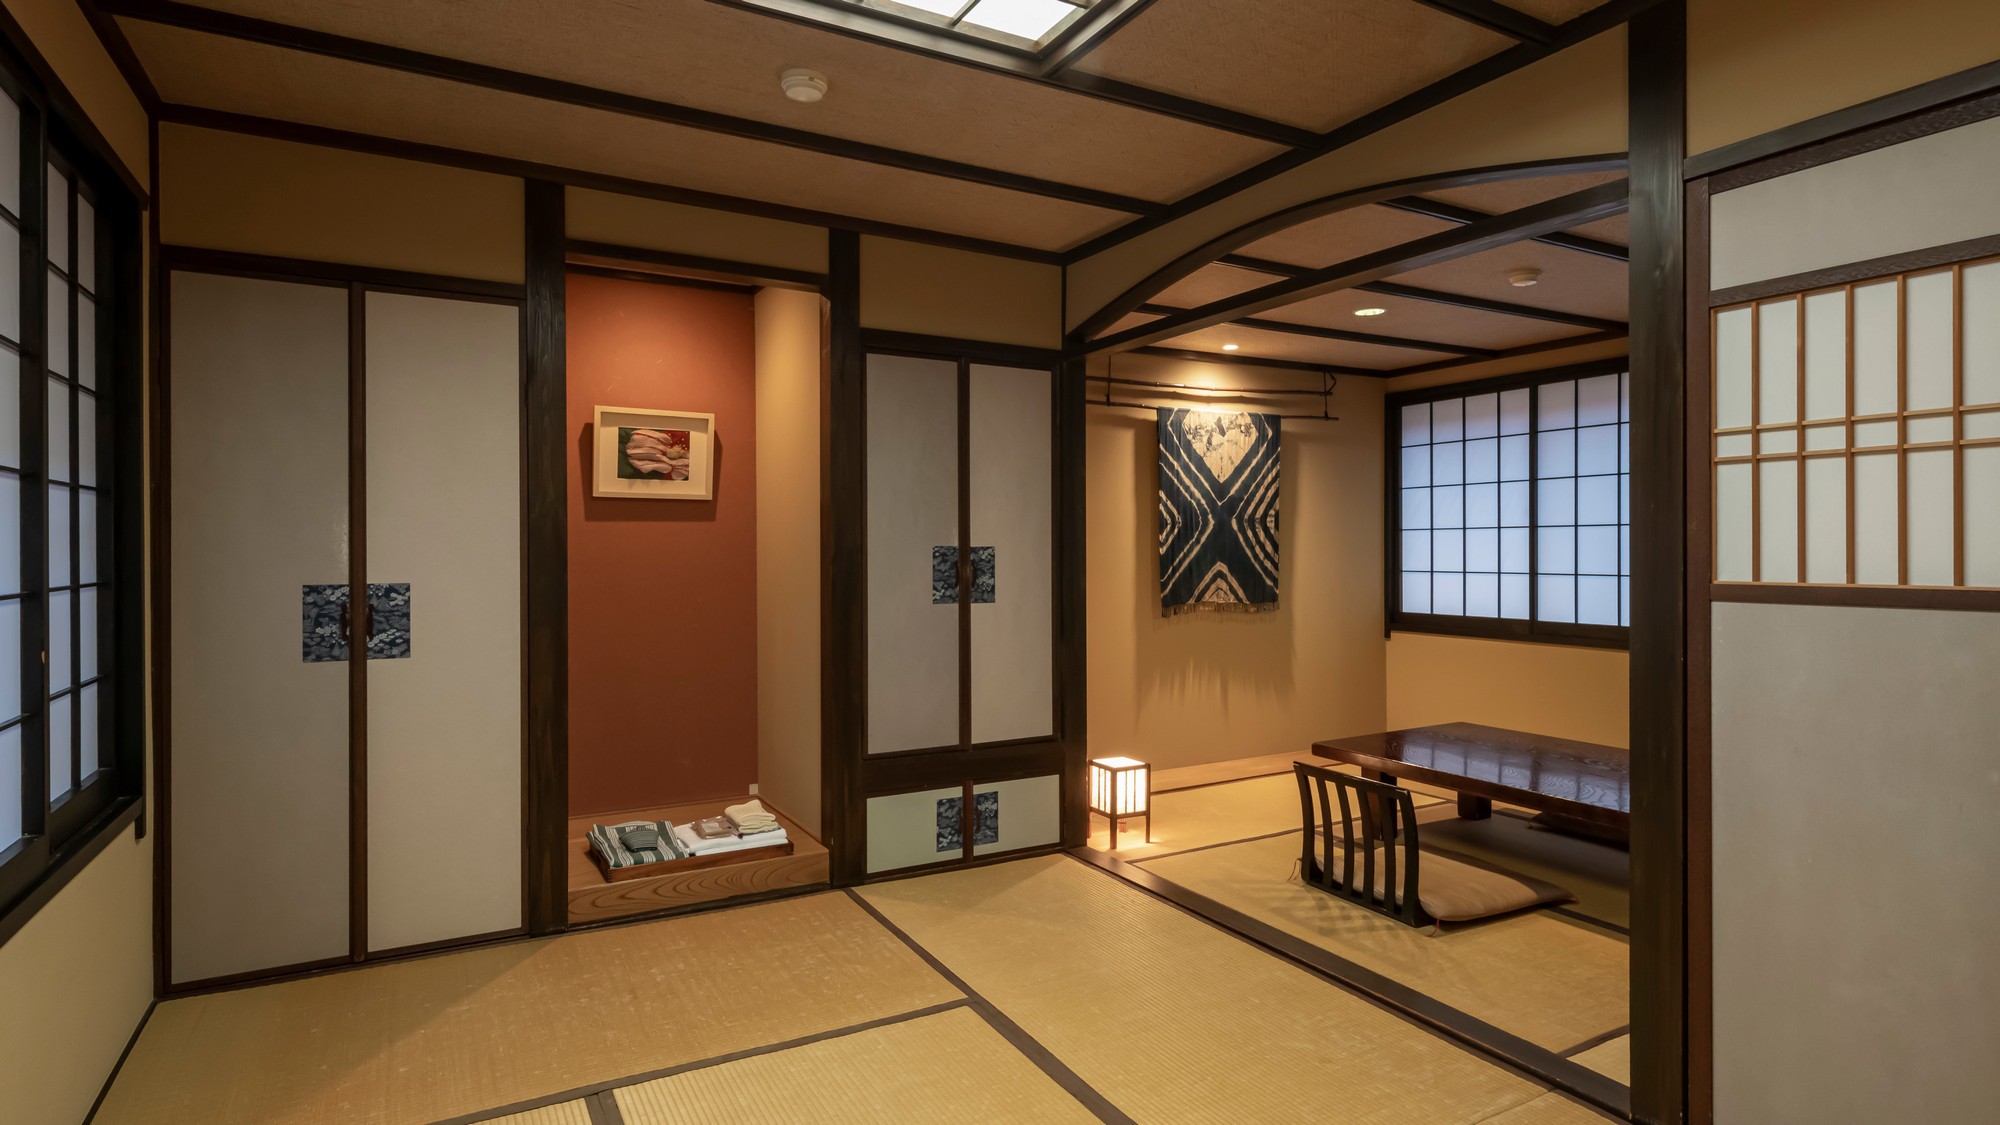 「すすき」は10畳の和室、鳥取の歴史と民芸の味わいを感じられる落ち着いた大人の雰囲気のお部屋です。